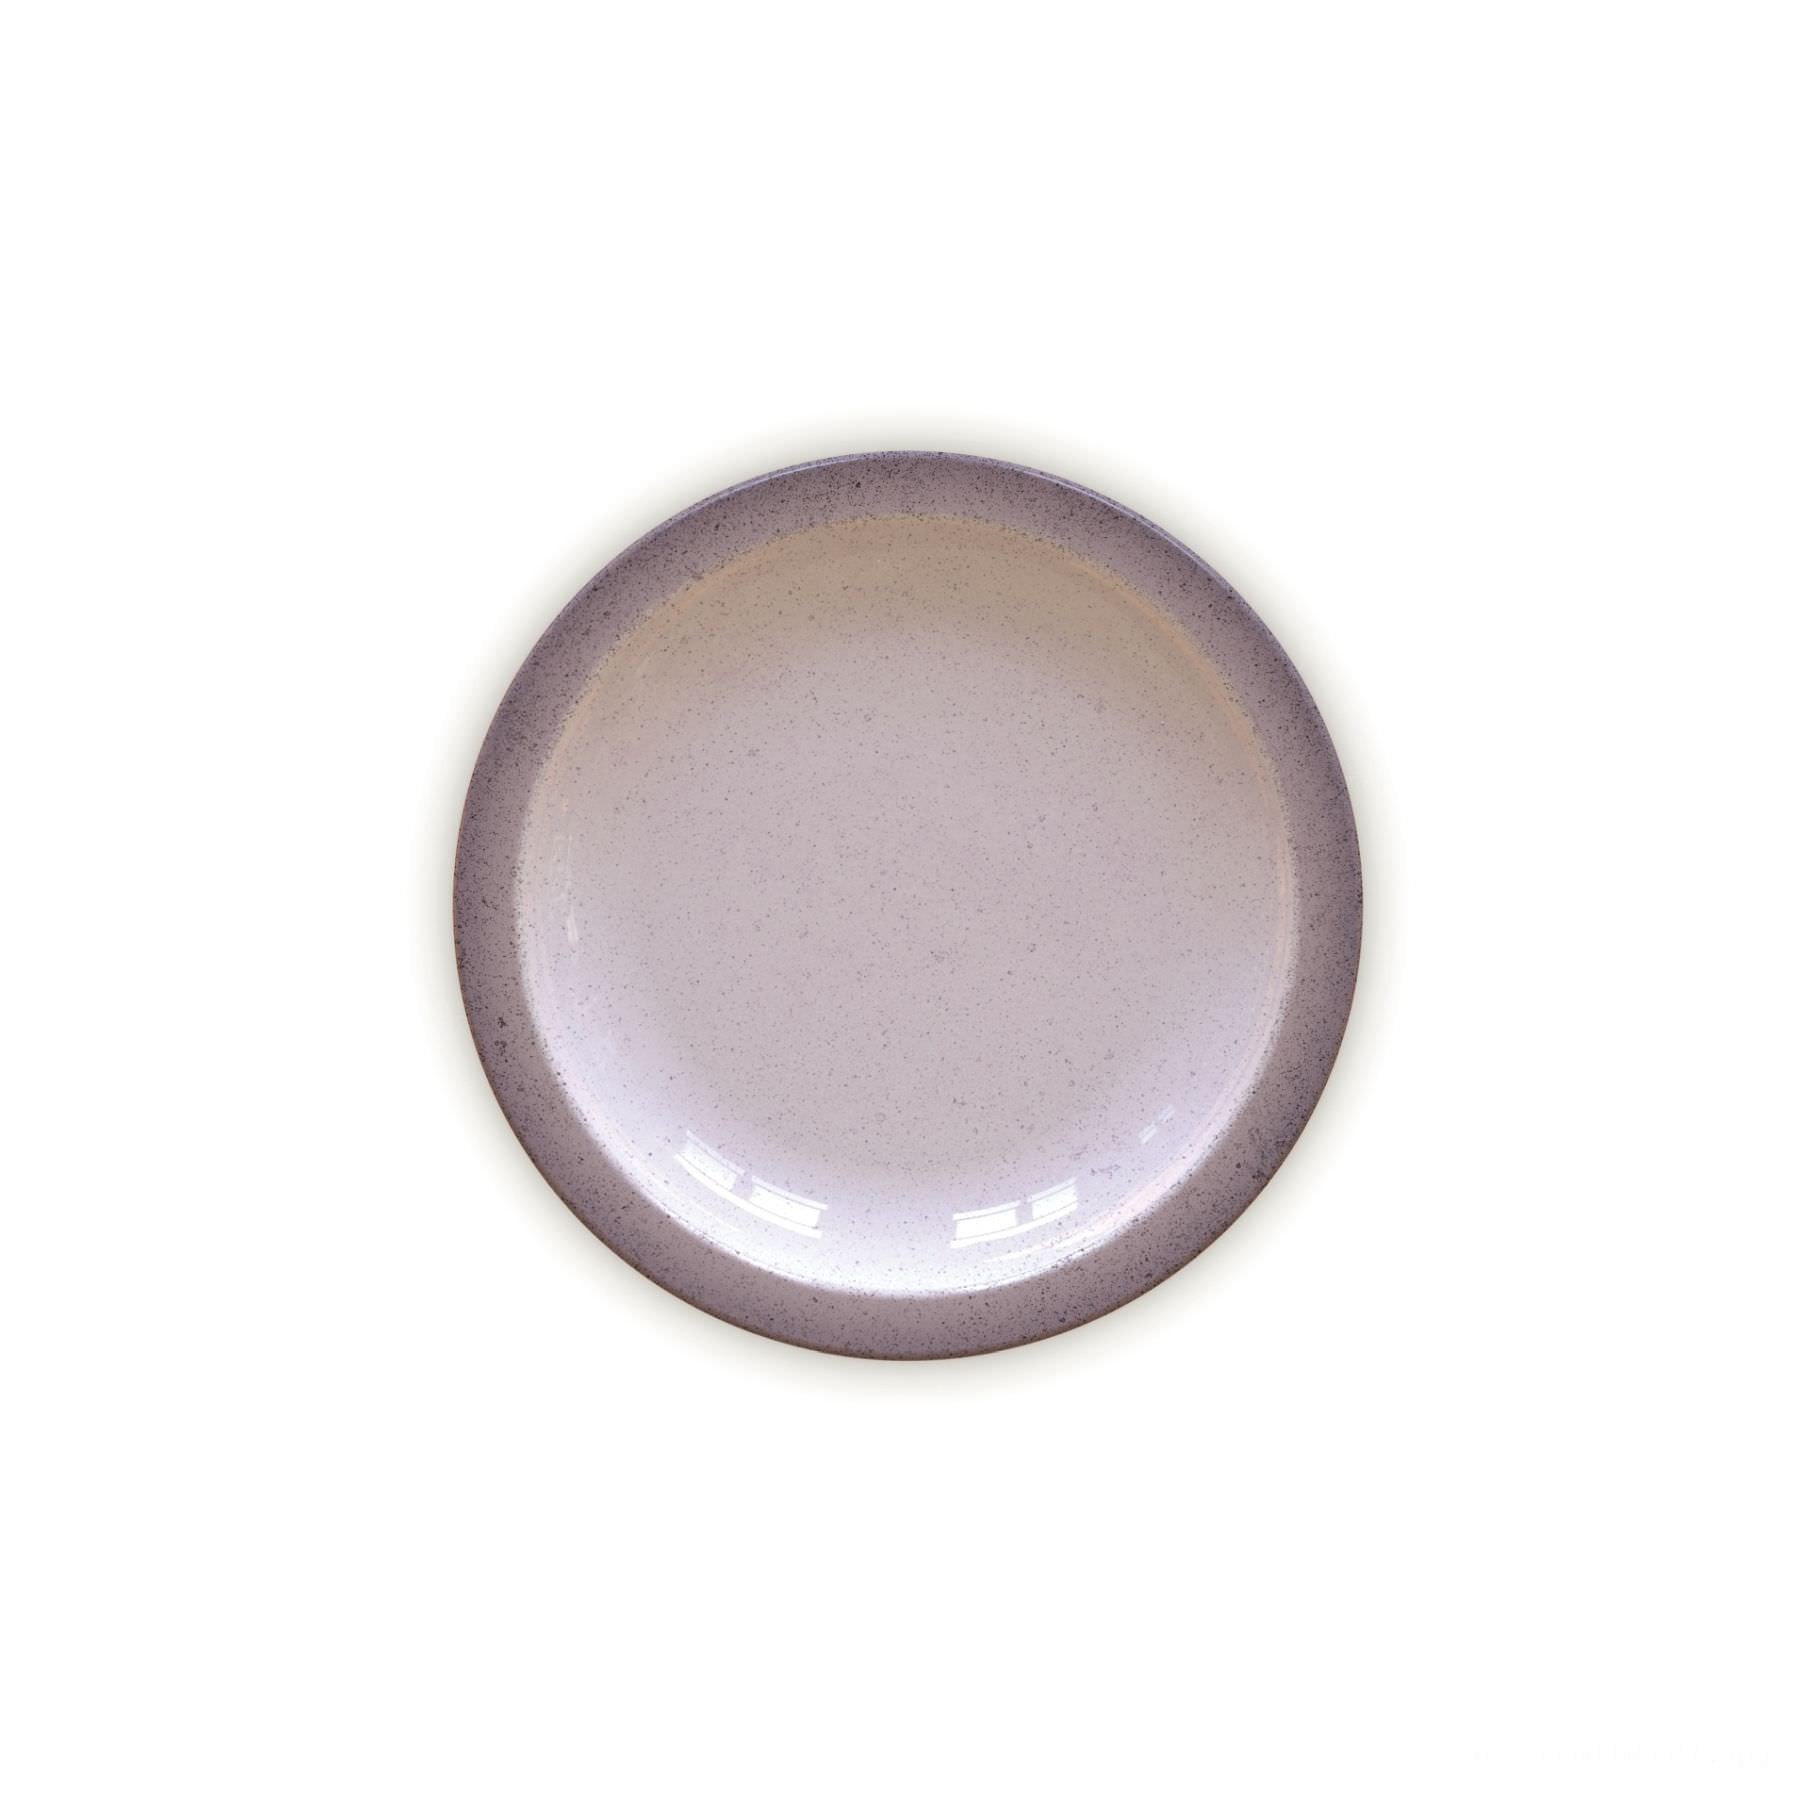 Prato Sobremesa Rústico Cinza em Porcelana Decorada 21 cm